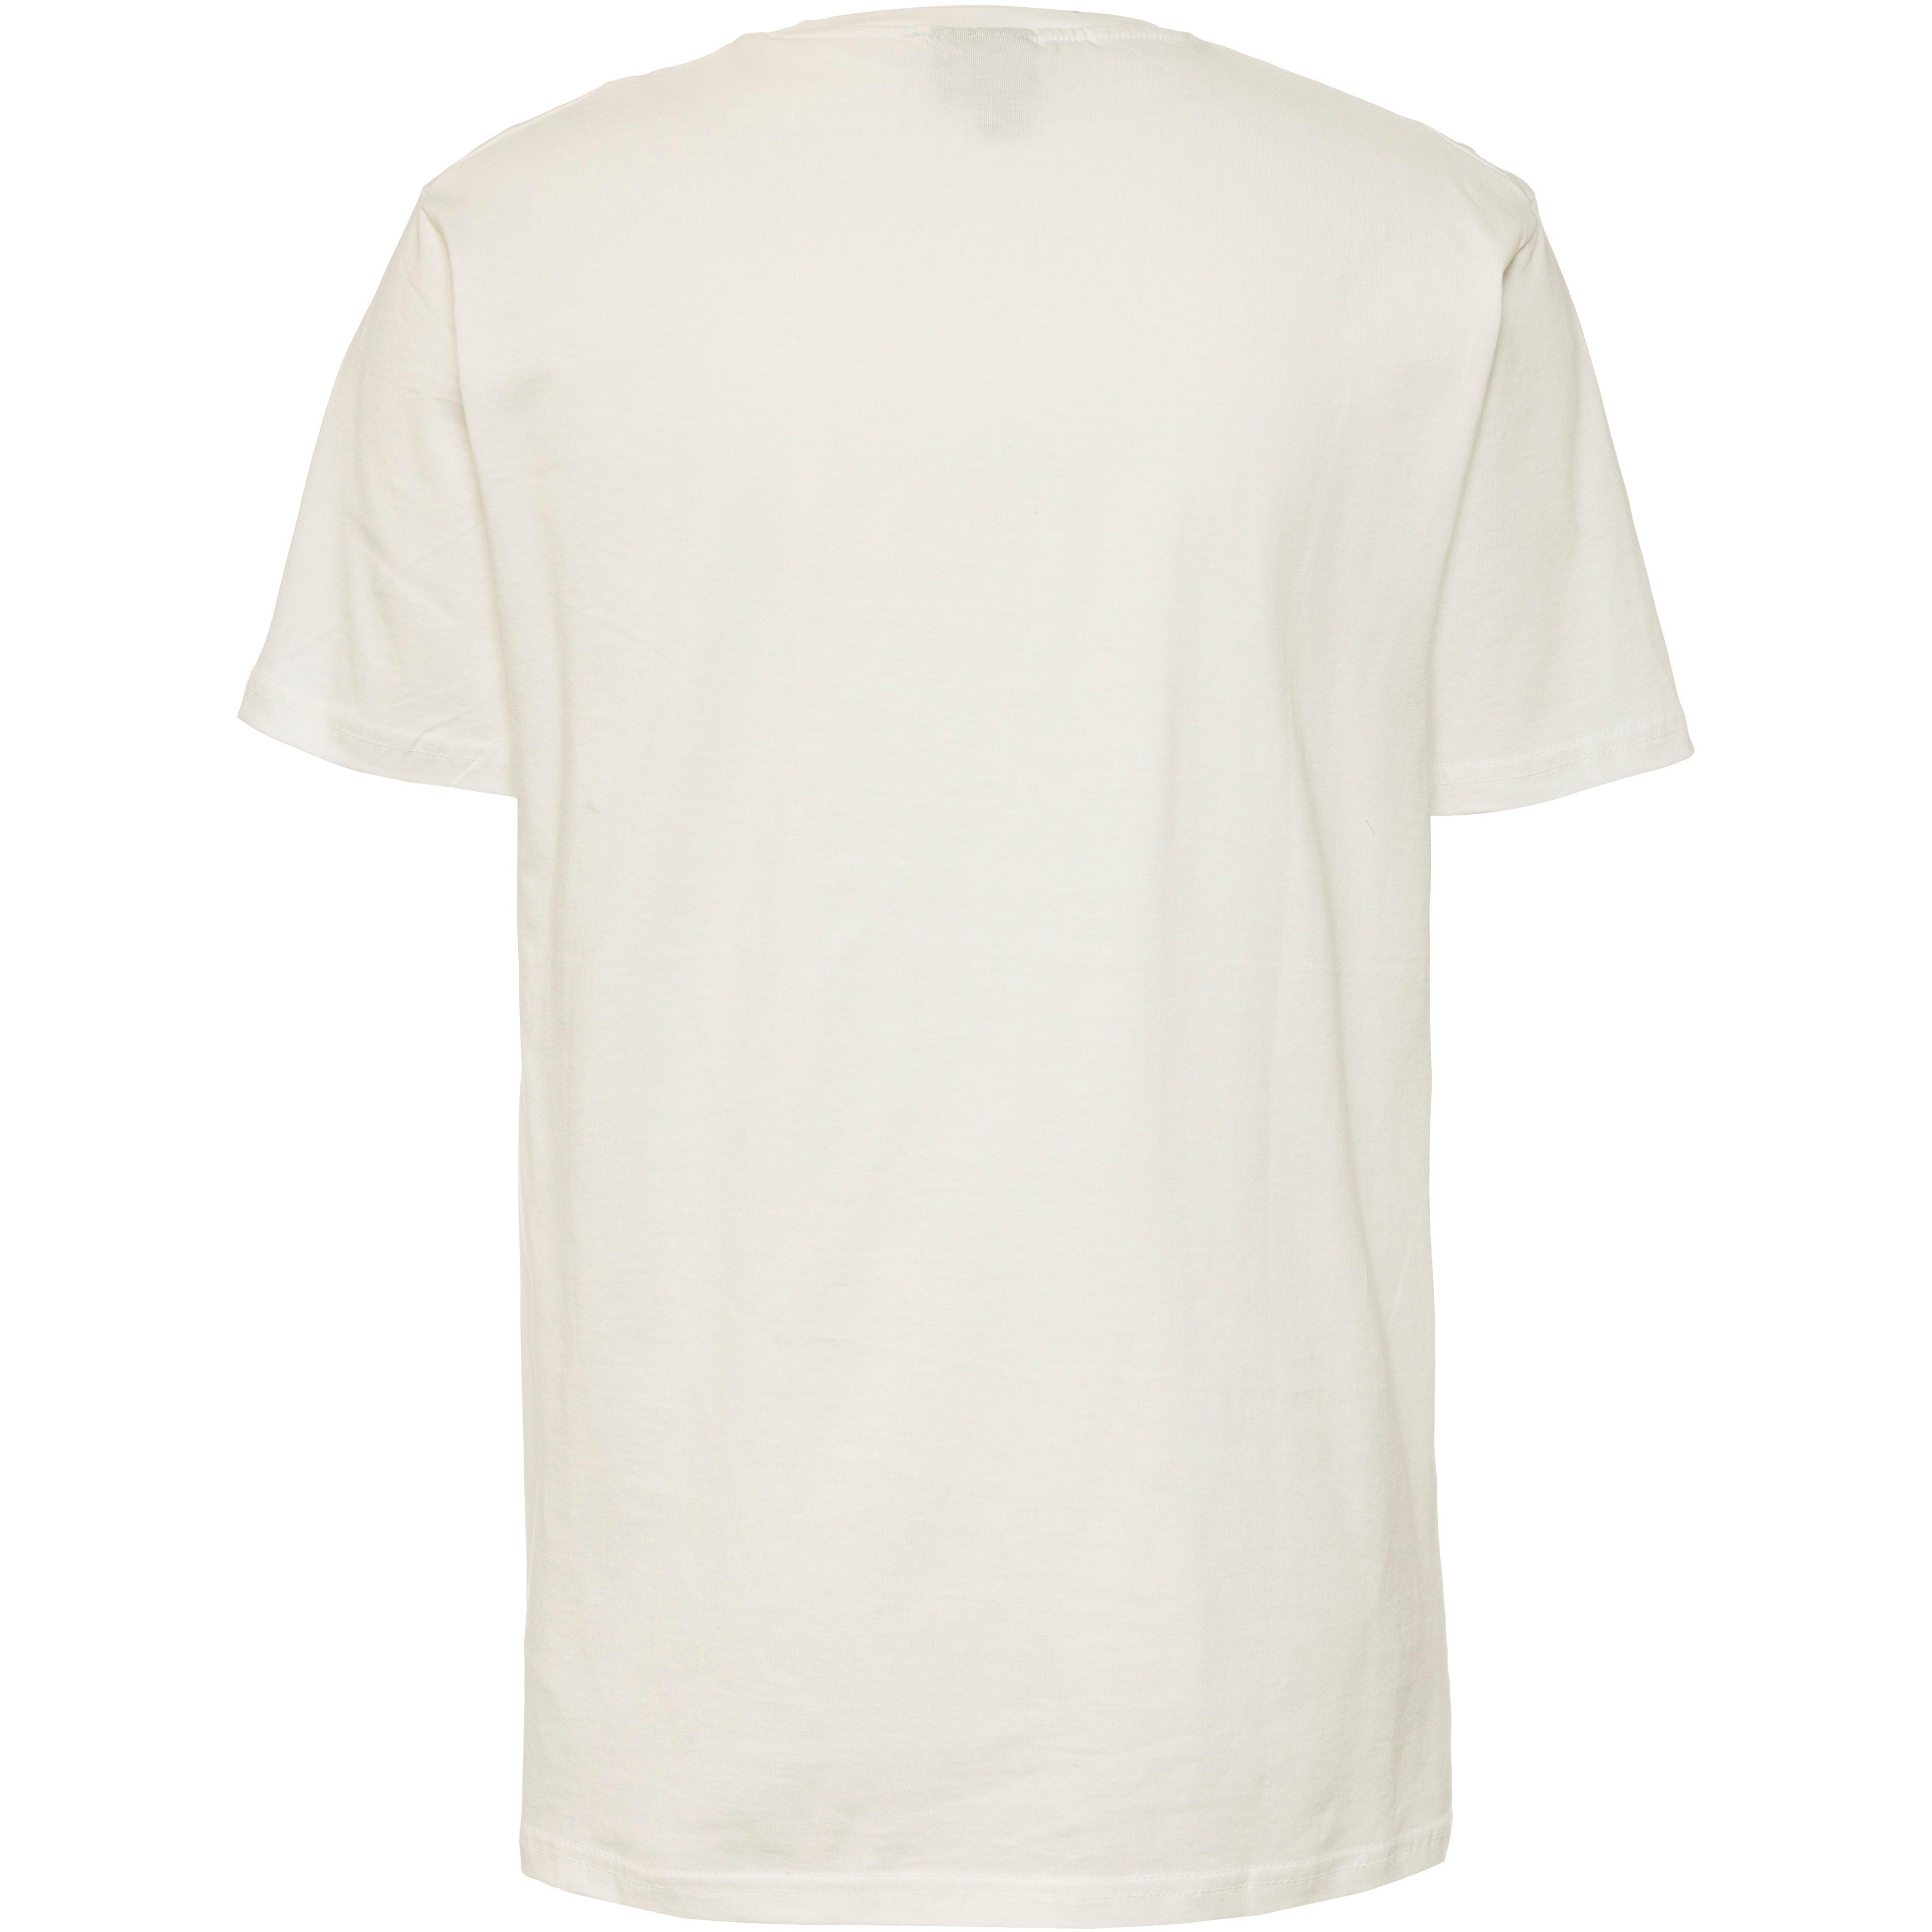 von T-Shirt white Ellesse Fuenti kaufen SportScheck Herren im Shop Online